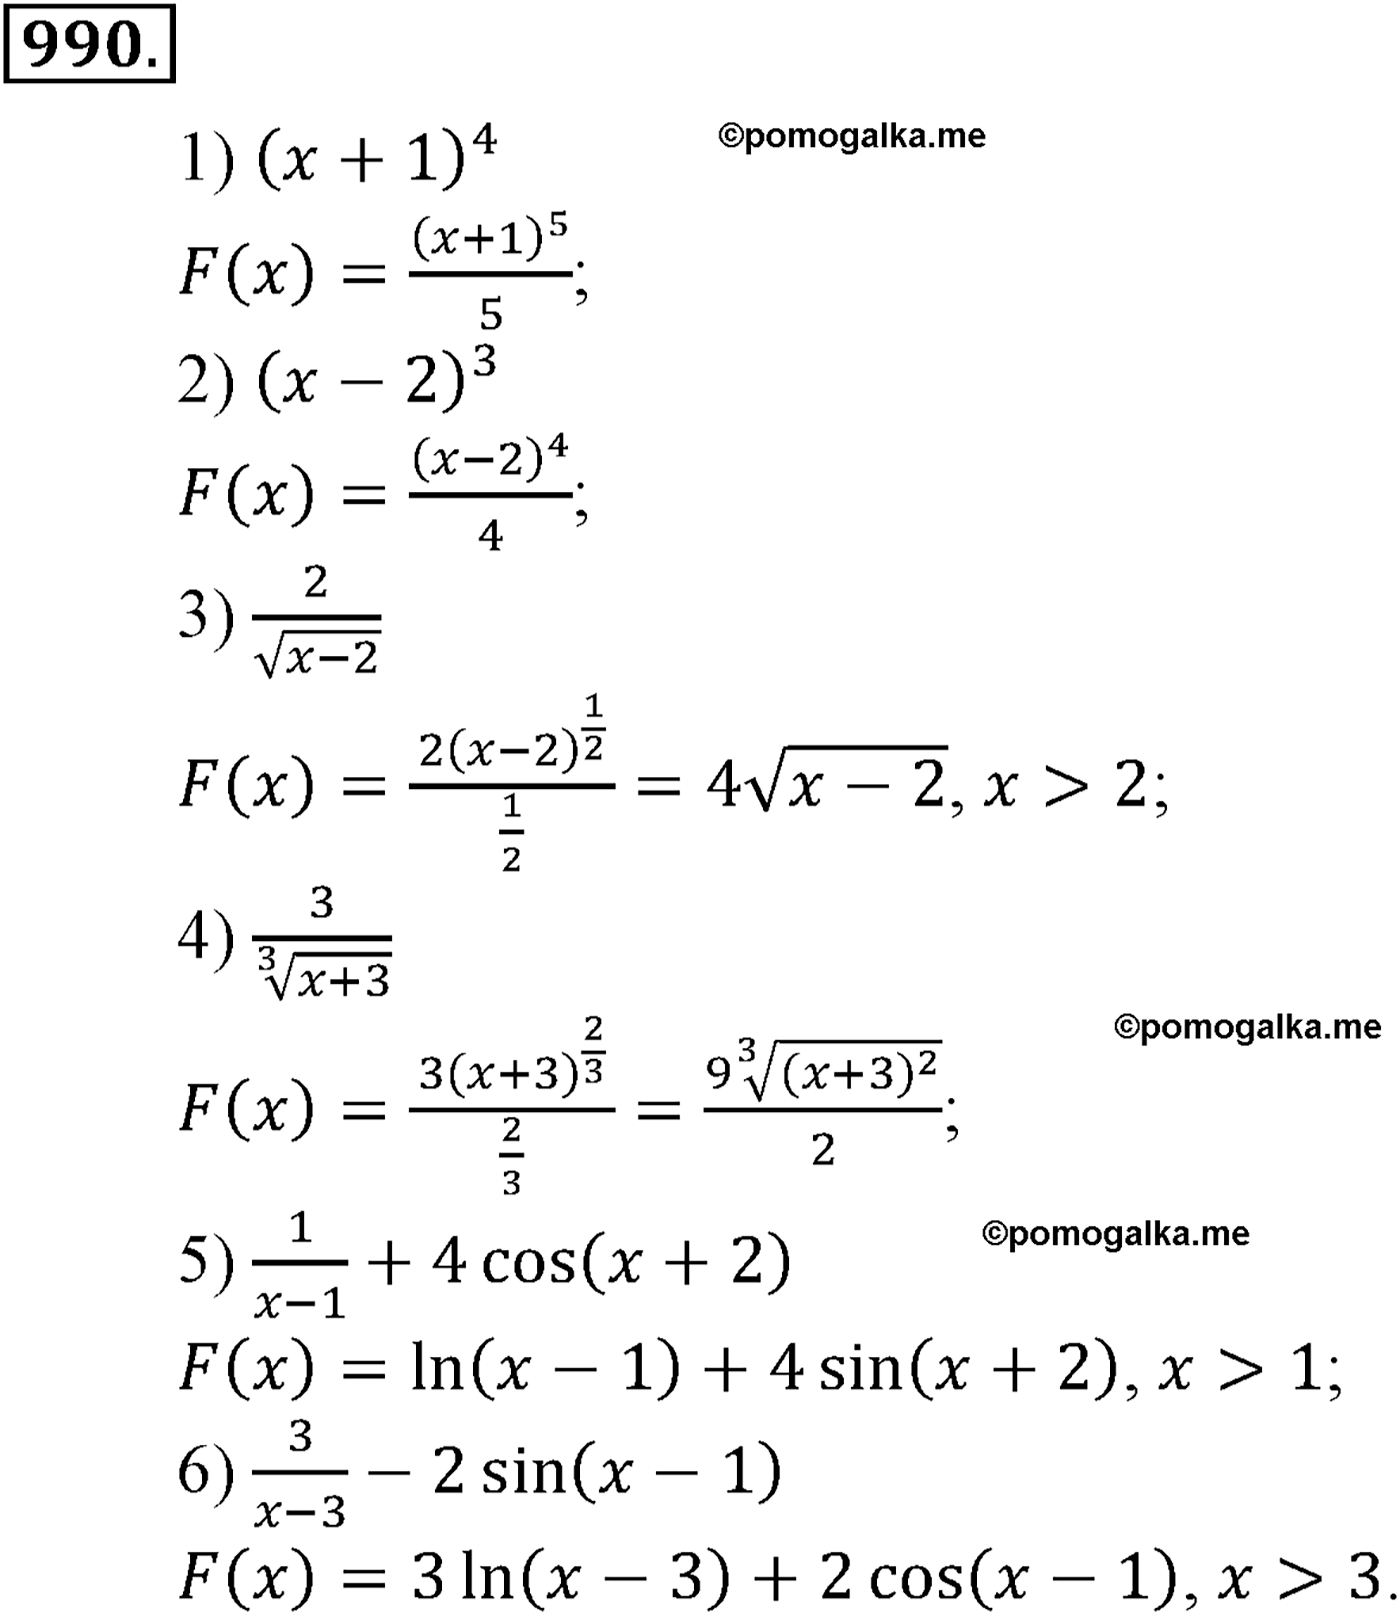 разбор задачи №990 по алгебре за 10-11 класс из учебника Алимова, Колягина